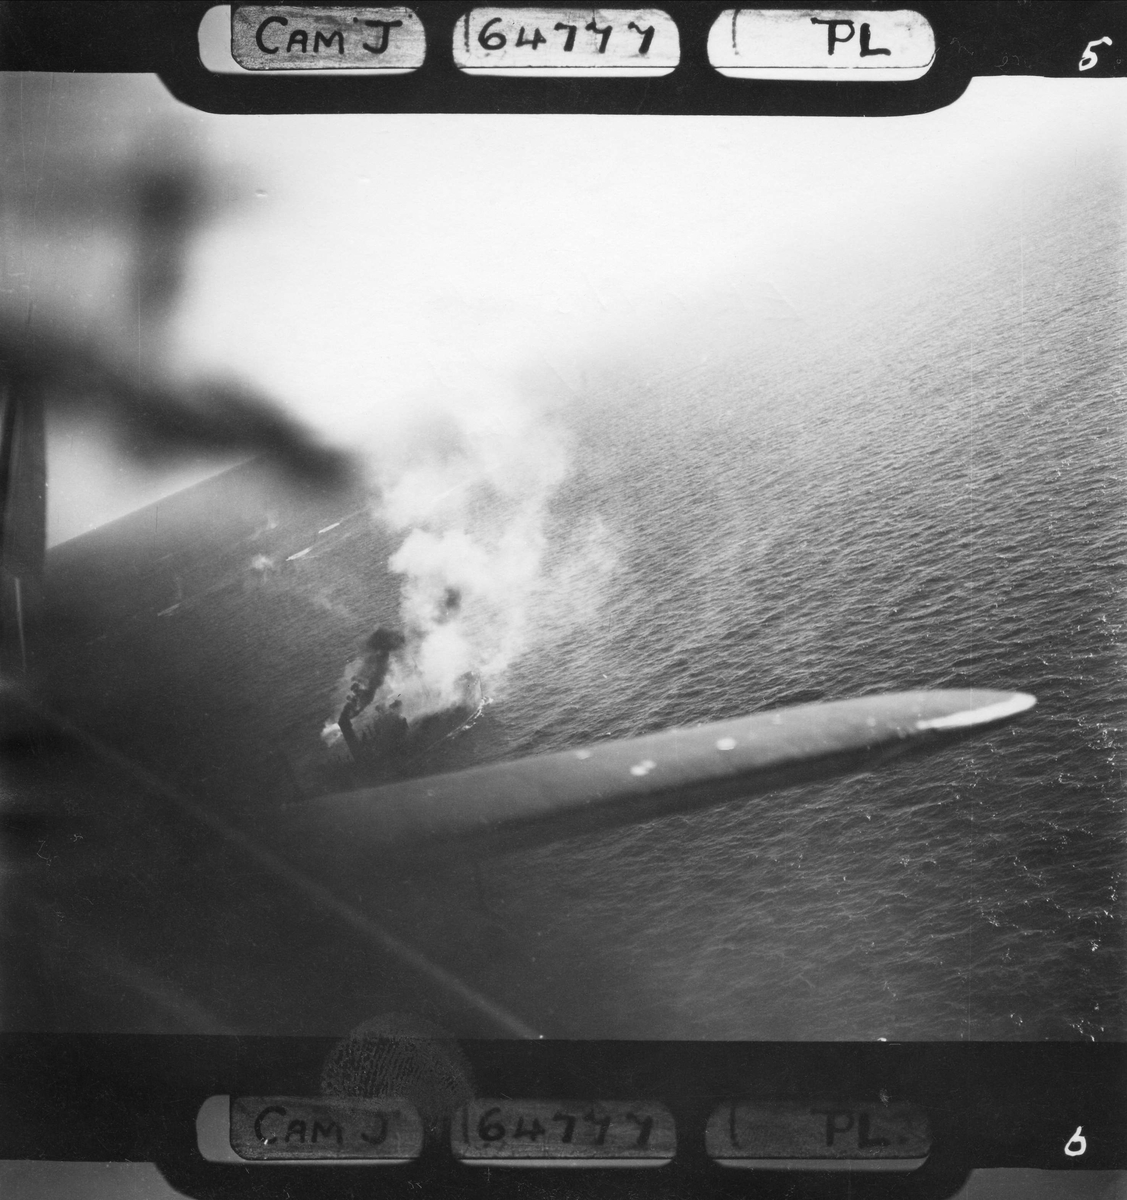 Et fiendtlig fartøy er angrepet av RAF og står i brann. Norskekysten, tidspunkt ukjent.